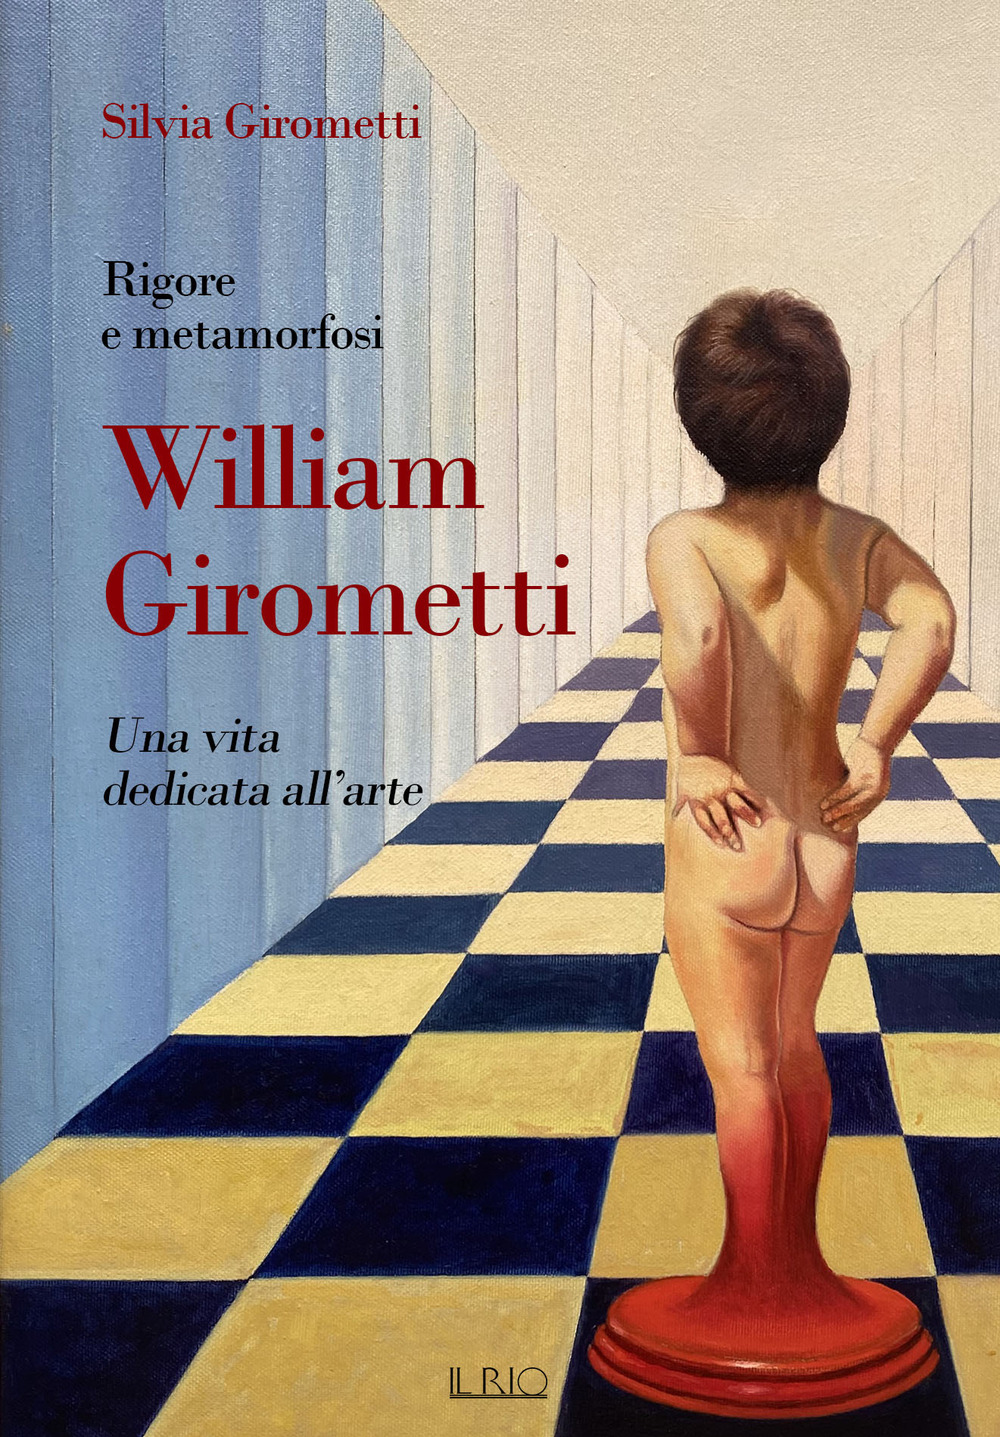 Rigore e metamorfosi: William Girometti. Una vita dedicata all'arte